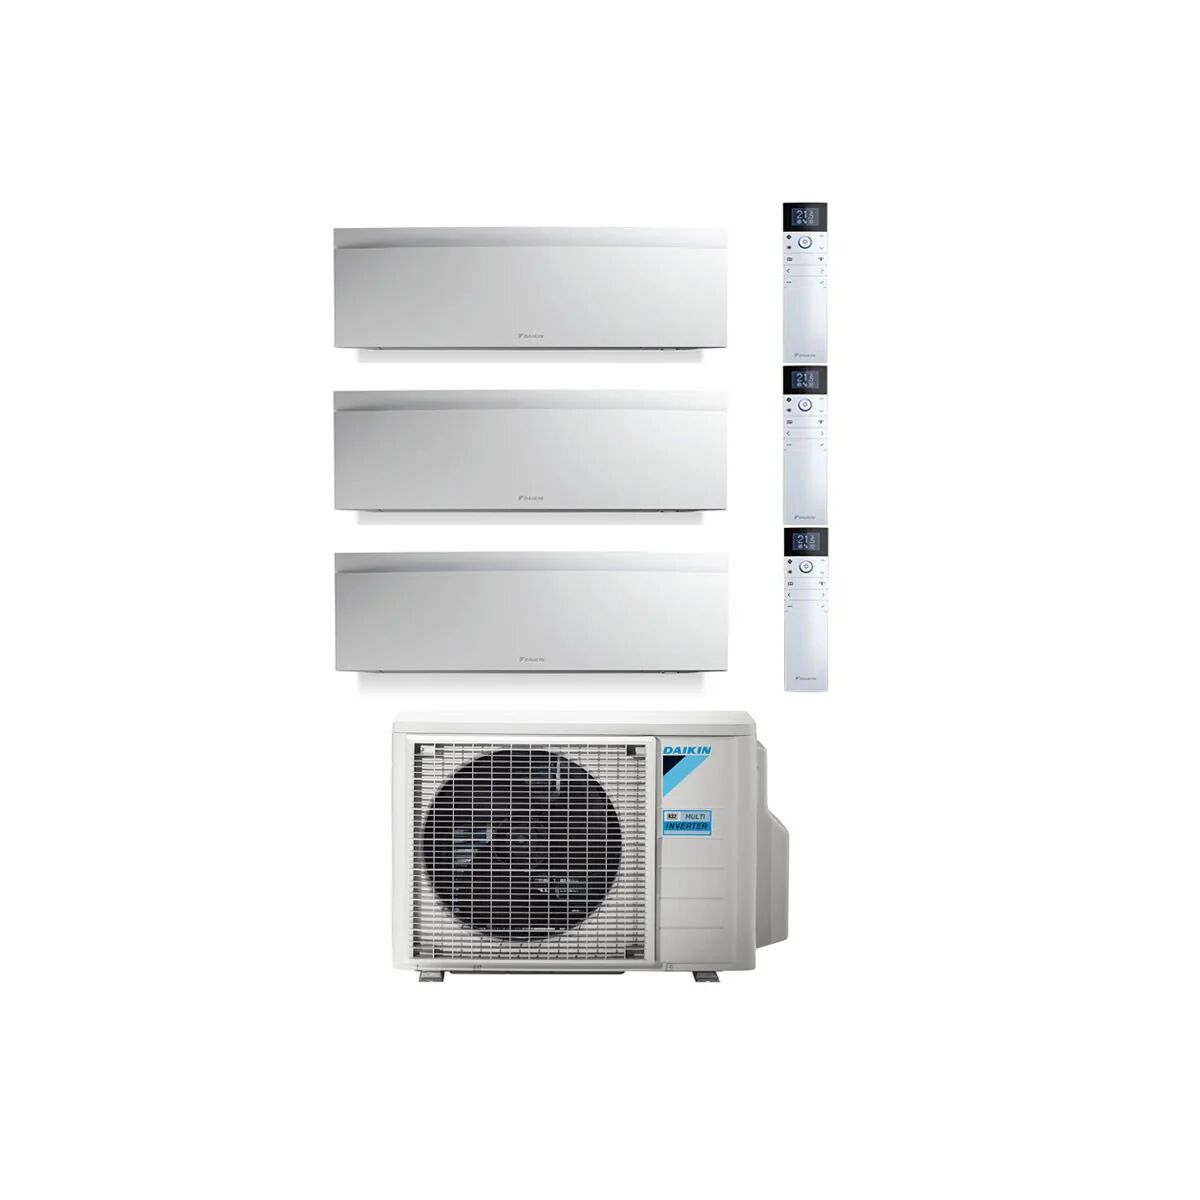 Condizionatore Daikin Emura Bianco Trial Split 7000+7000+15000 Btu Inverter R32 3Mxm68 A++ Wifi (3MXM68 7+7+15)